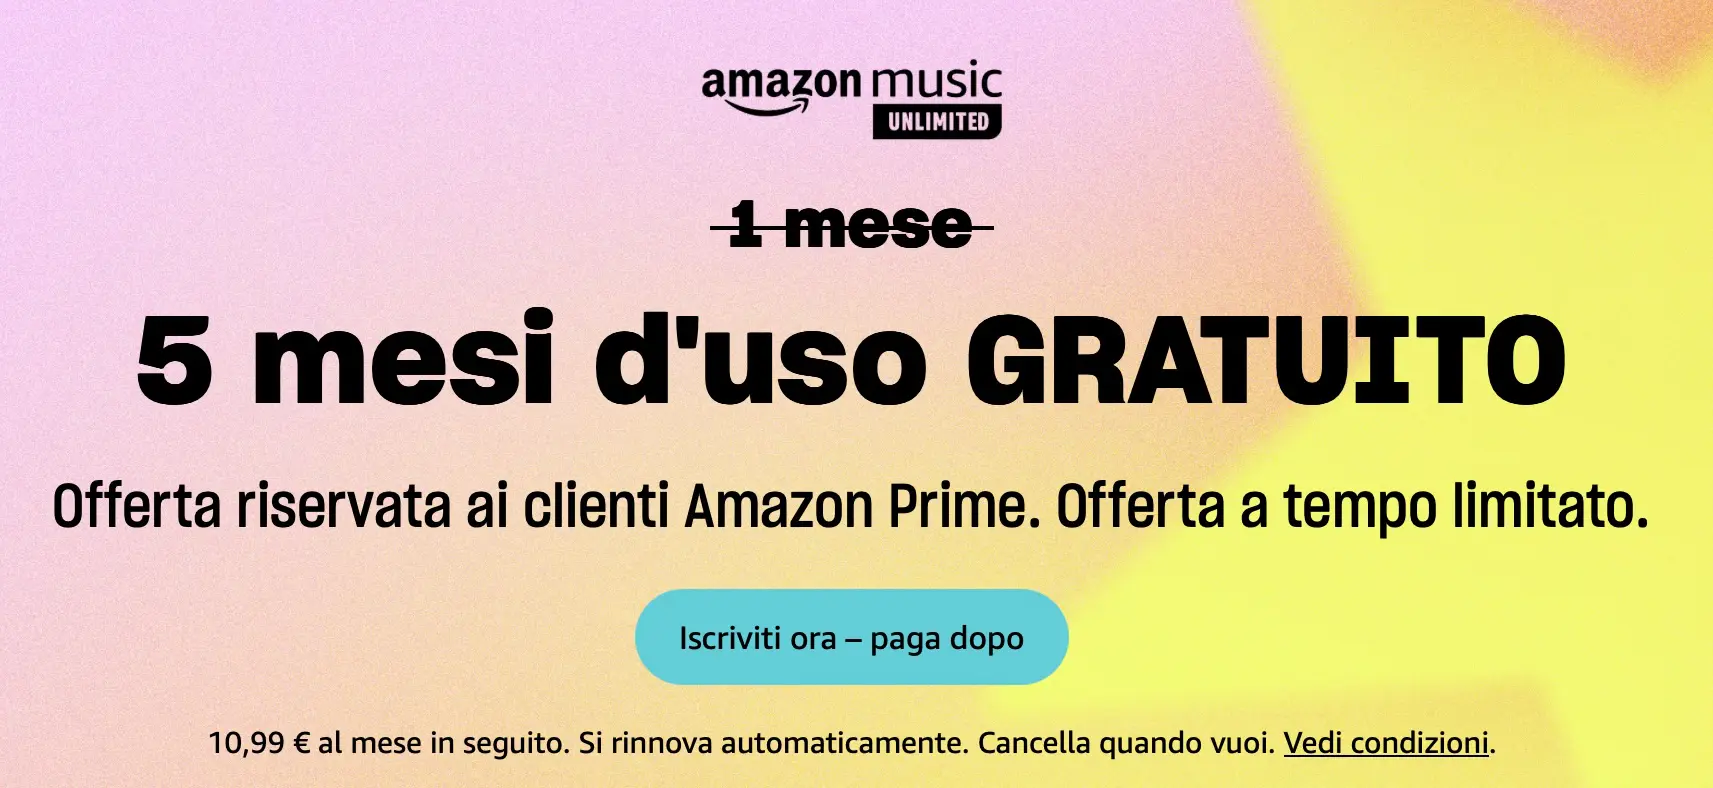 Amazon Music Unlimited è gratis per 5 mesi, offerta riservata ai clienti Amazon Prime